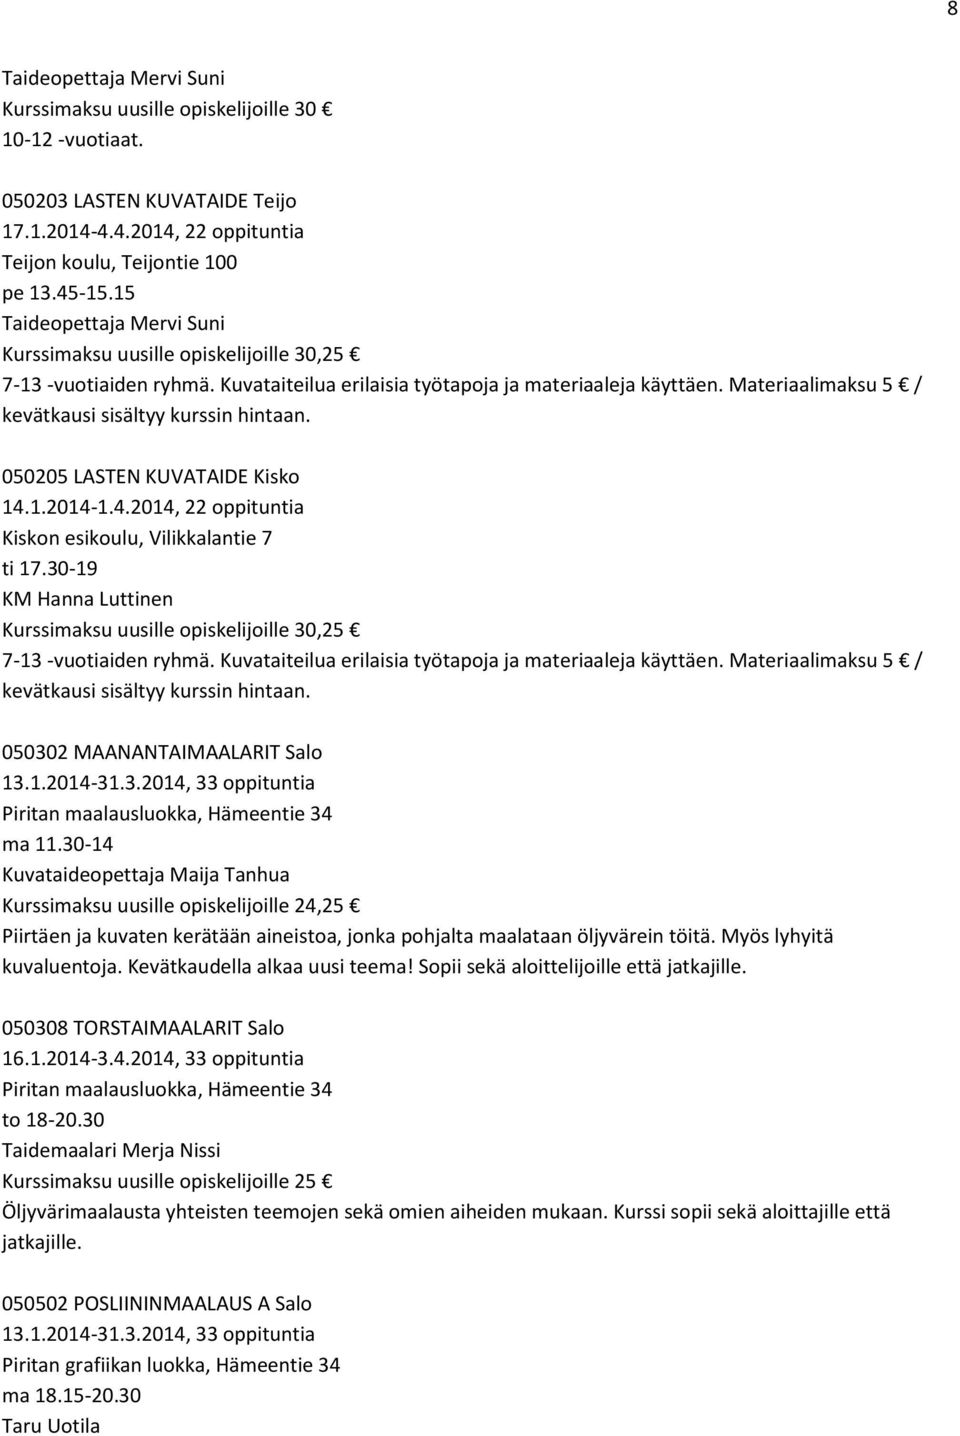 Materiaalimaksu 5 / kevätkausi sisältyy kurssin hintaan. 050205 LASTEN KUVATAIDE Kisko 14.1.2014-1.4.2014, 22 oppituntia Kiskon esikoulu, Vilikkalantie 7 ti 17.